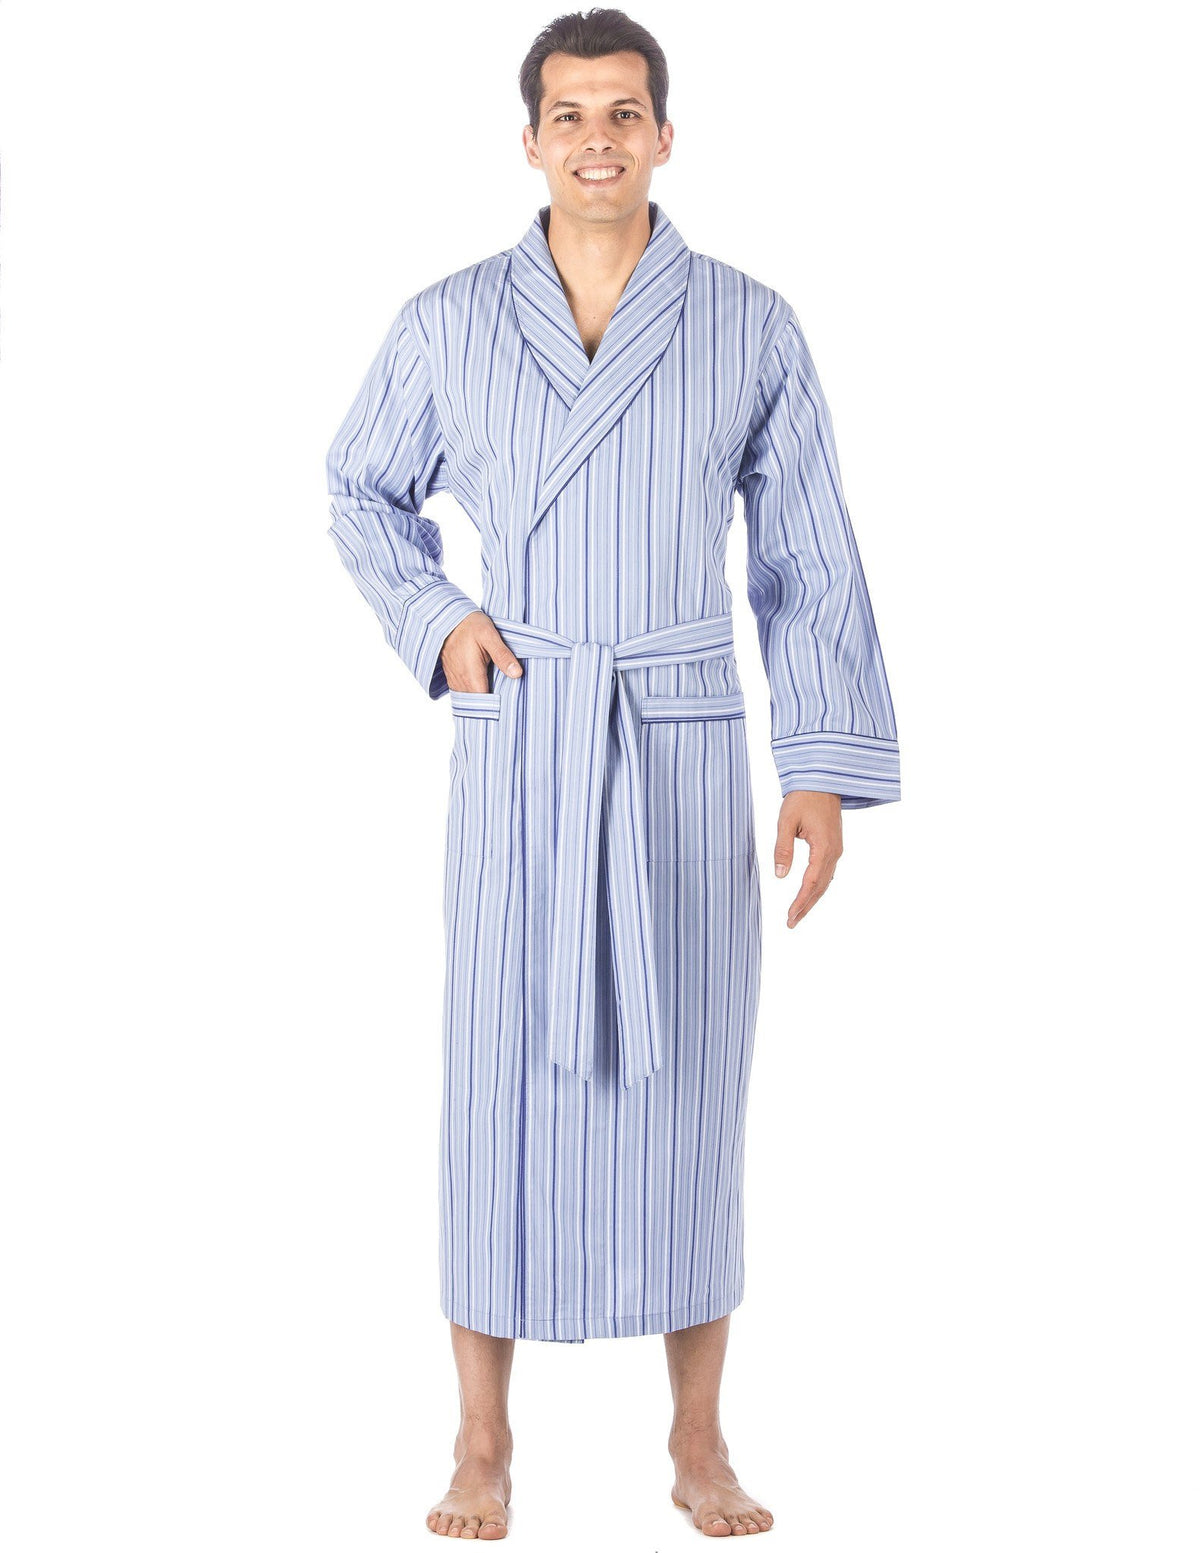 Men's Premium 100% Cotton Full-Length Robe - Stripes Light Blue